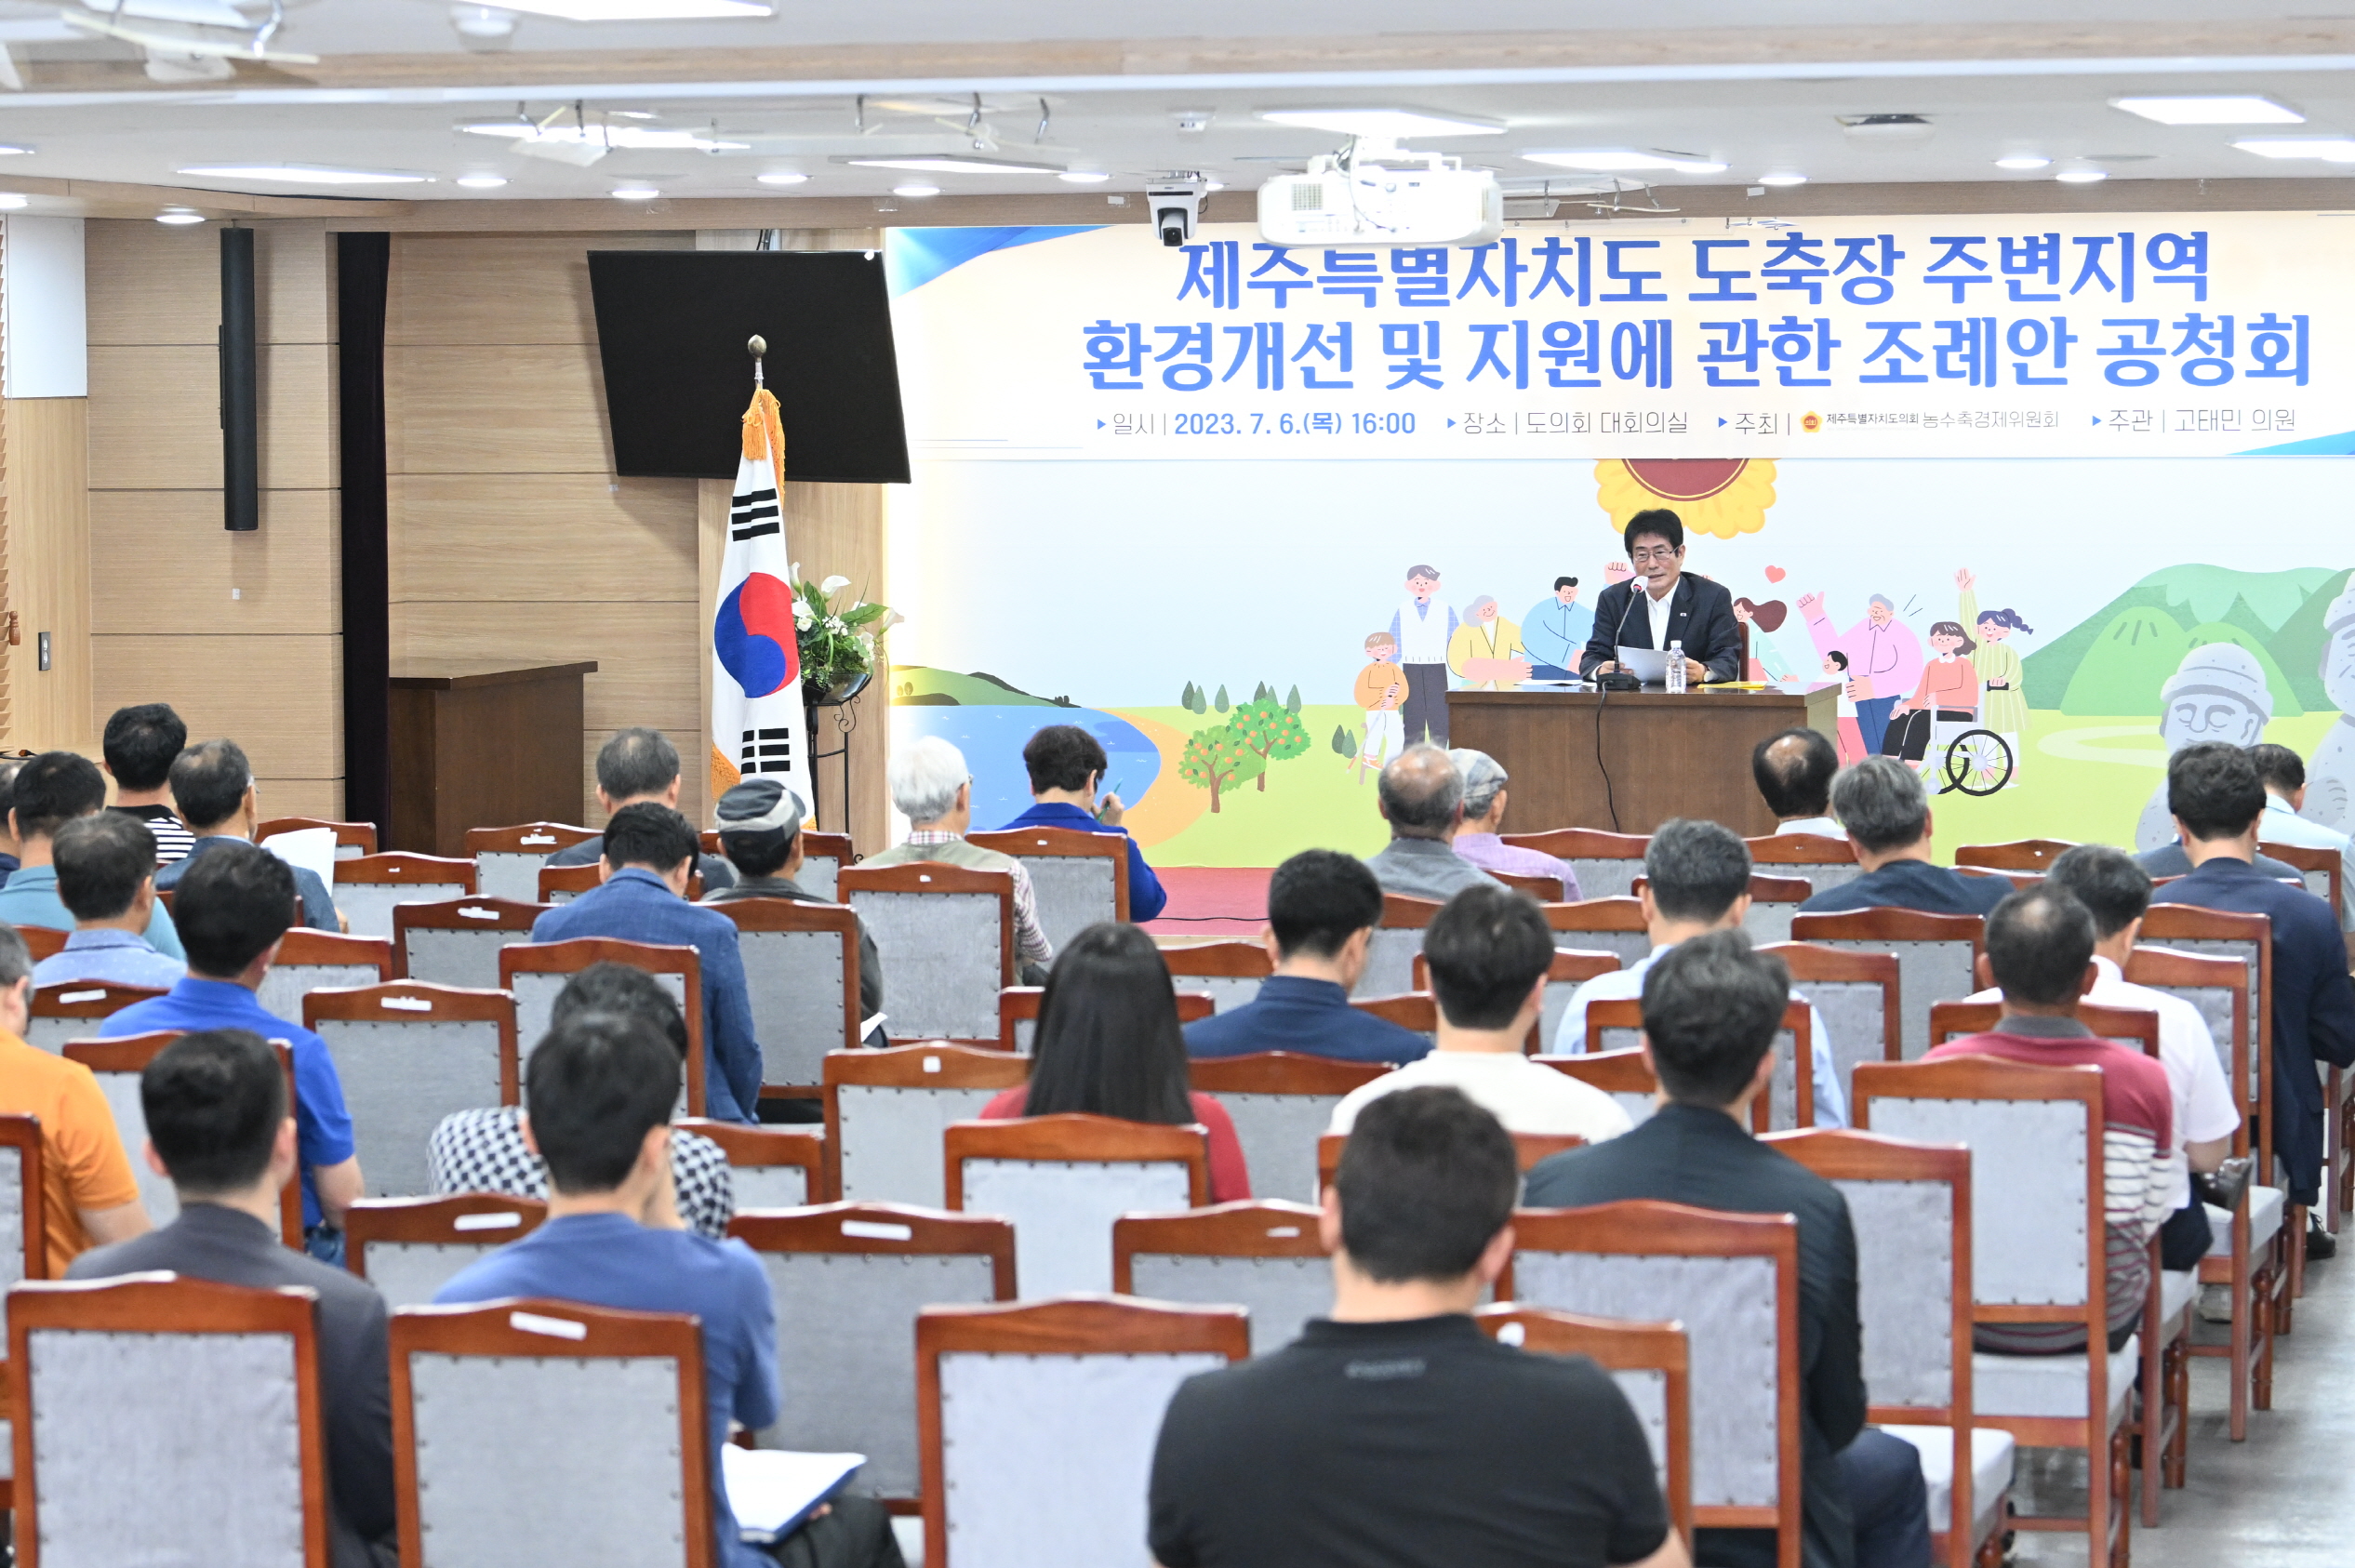 고태민 의원, “도축장 주변지역 환경개선 및 지원에 관한 조례안”공청회 개최 